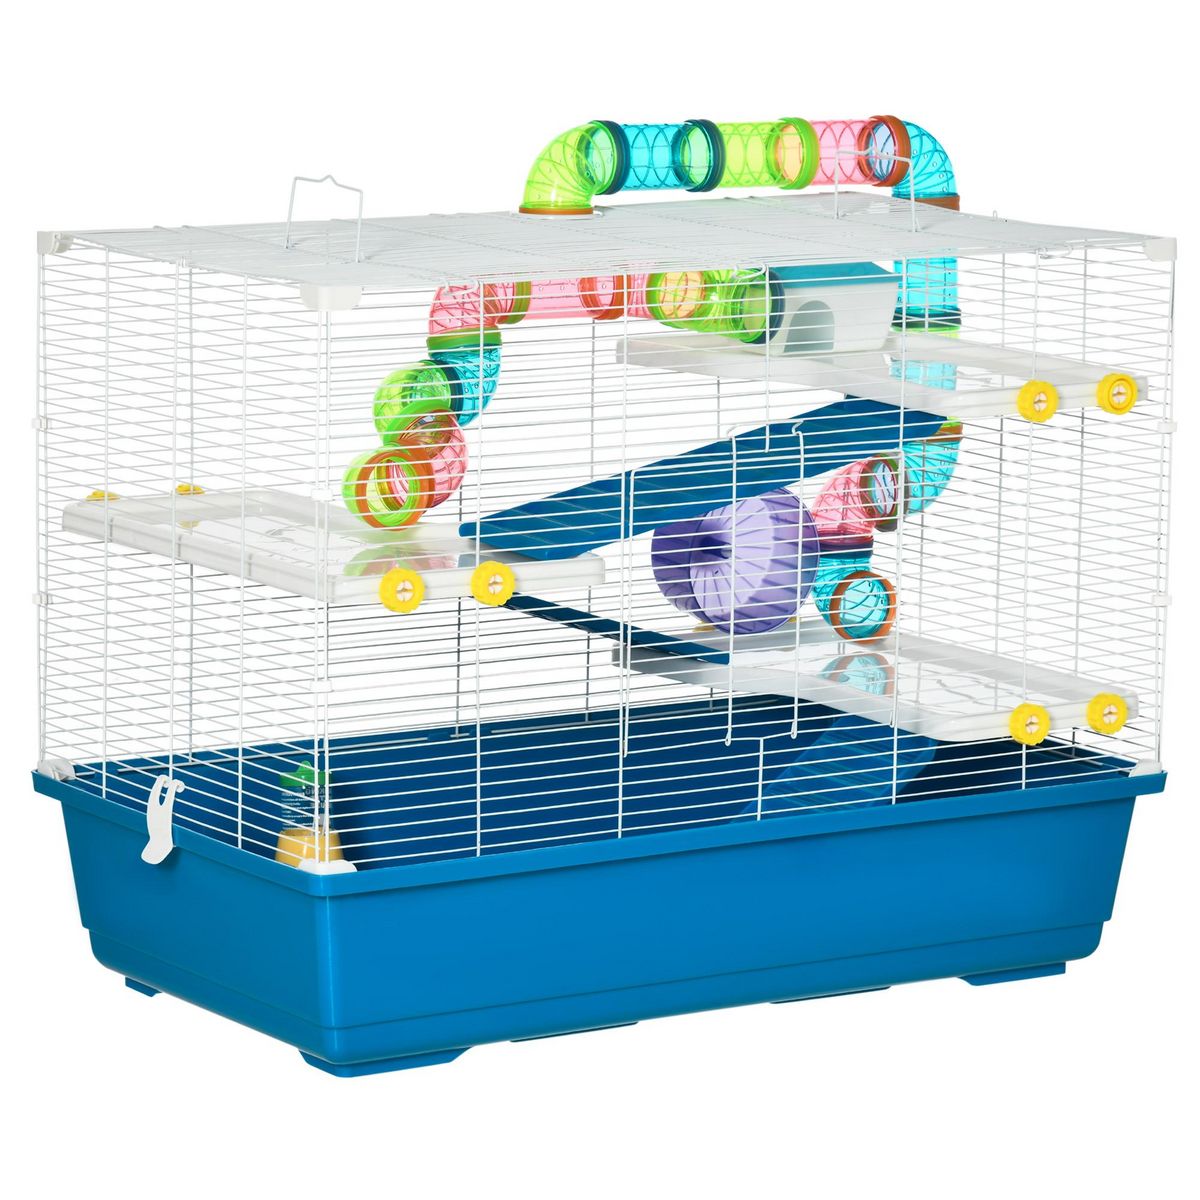 PAWHUT Grande cage à hamsters 4 niveaux - tunnels, abreuvoir, mangeoire, roue, maisonnette, échelles - dim. 79L x 46l x 60H cm - métal PP bleu blanc